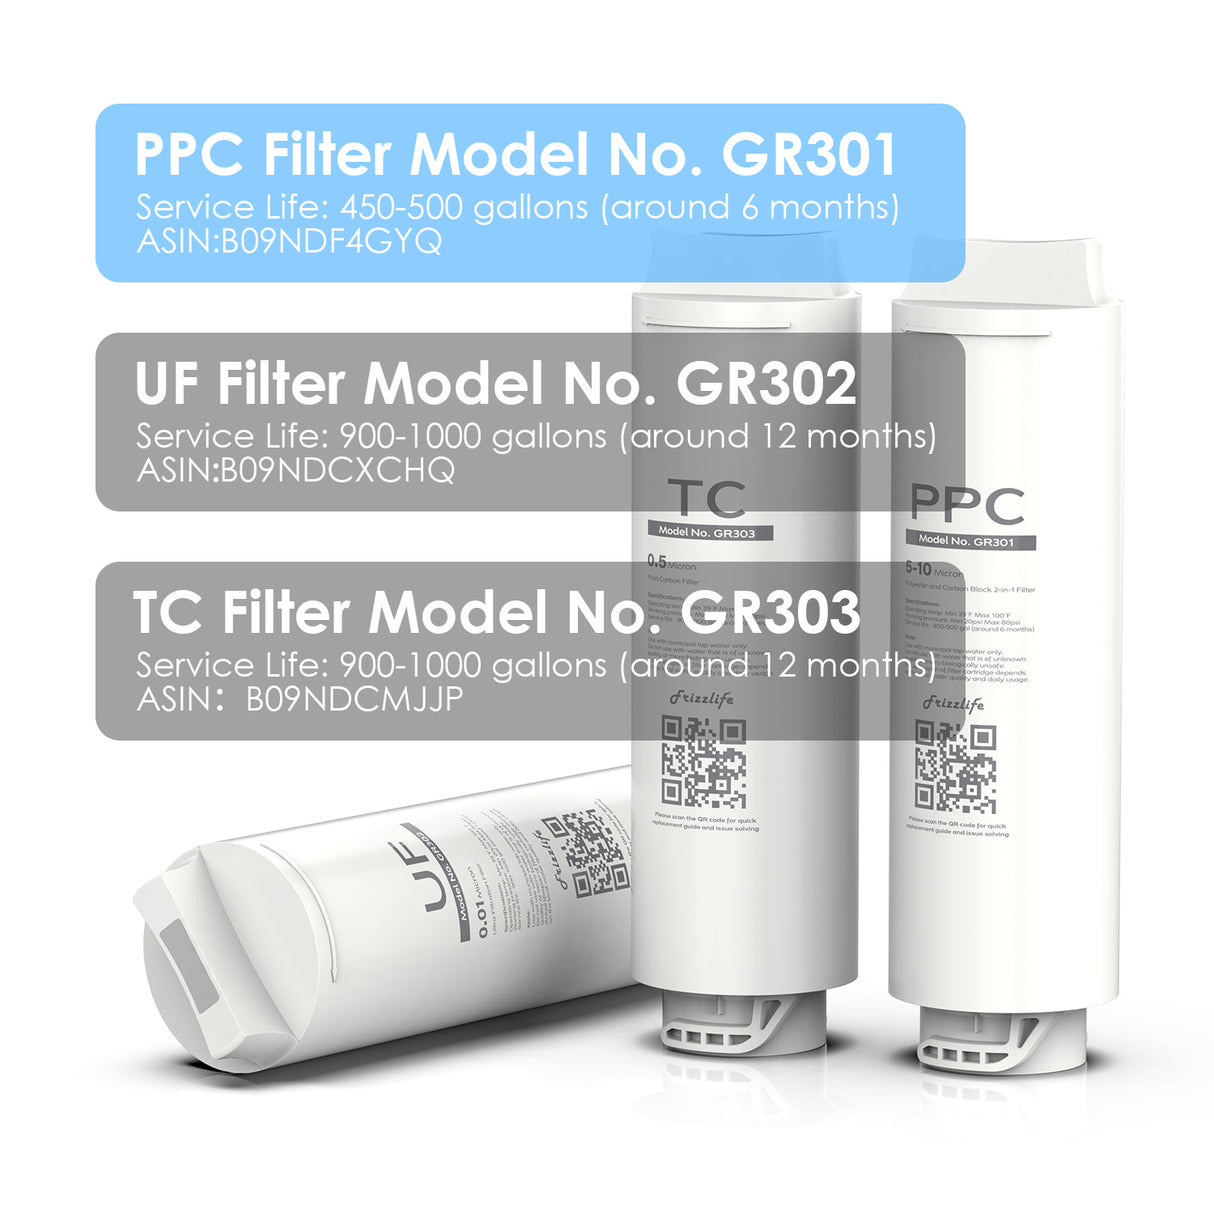 Frizzlife GR301 Cartouche filtrante de rechange (PPC) pour filtre à eau à ultra-filtration GX99